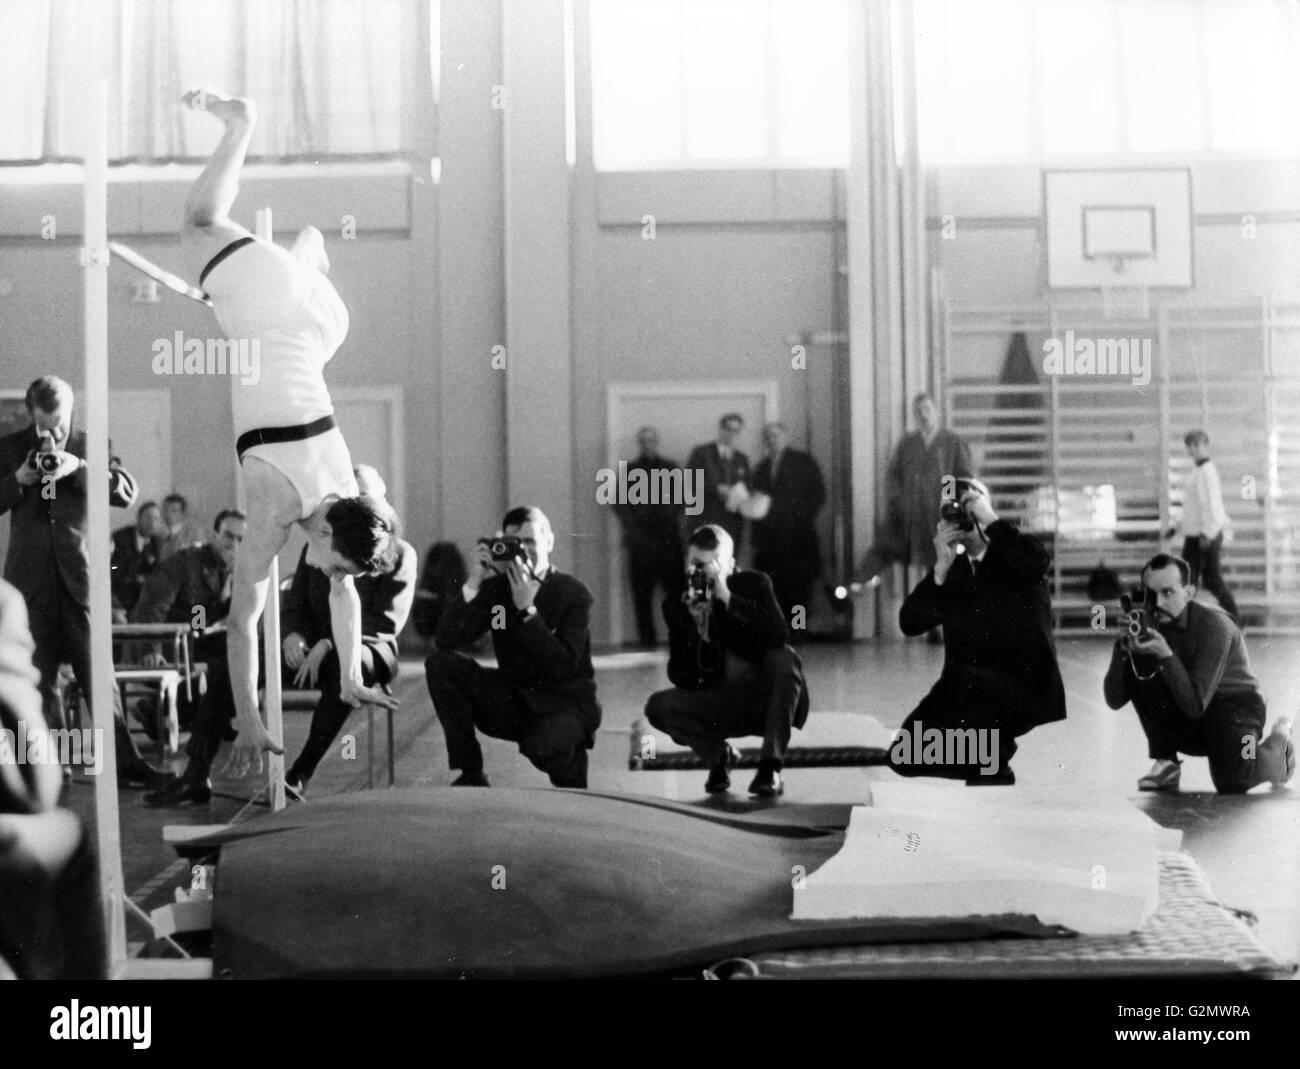 Goran fredricksson le saut,piscine,1962,championnat de Stockholm Banque D'Images